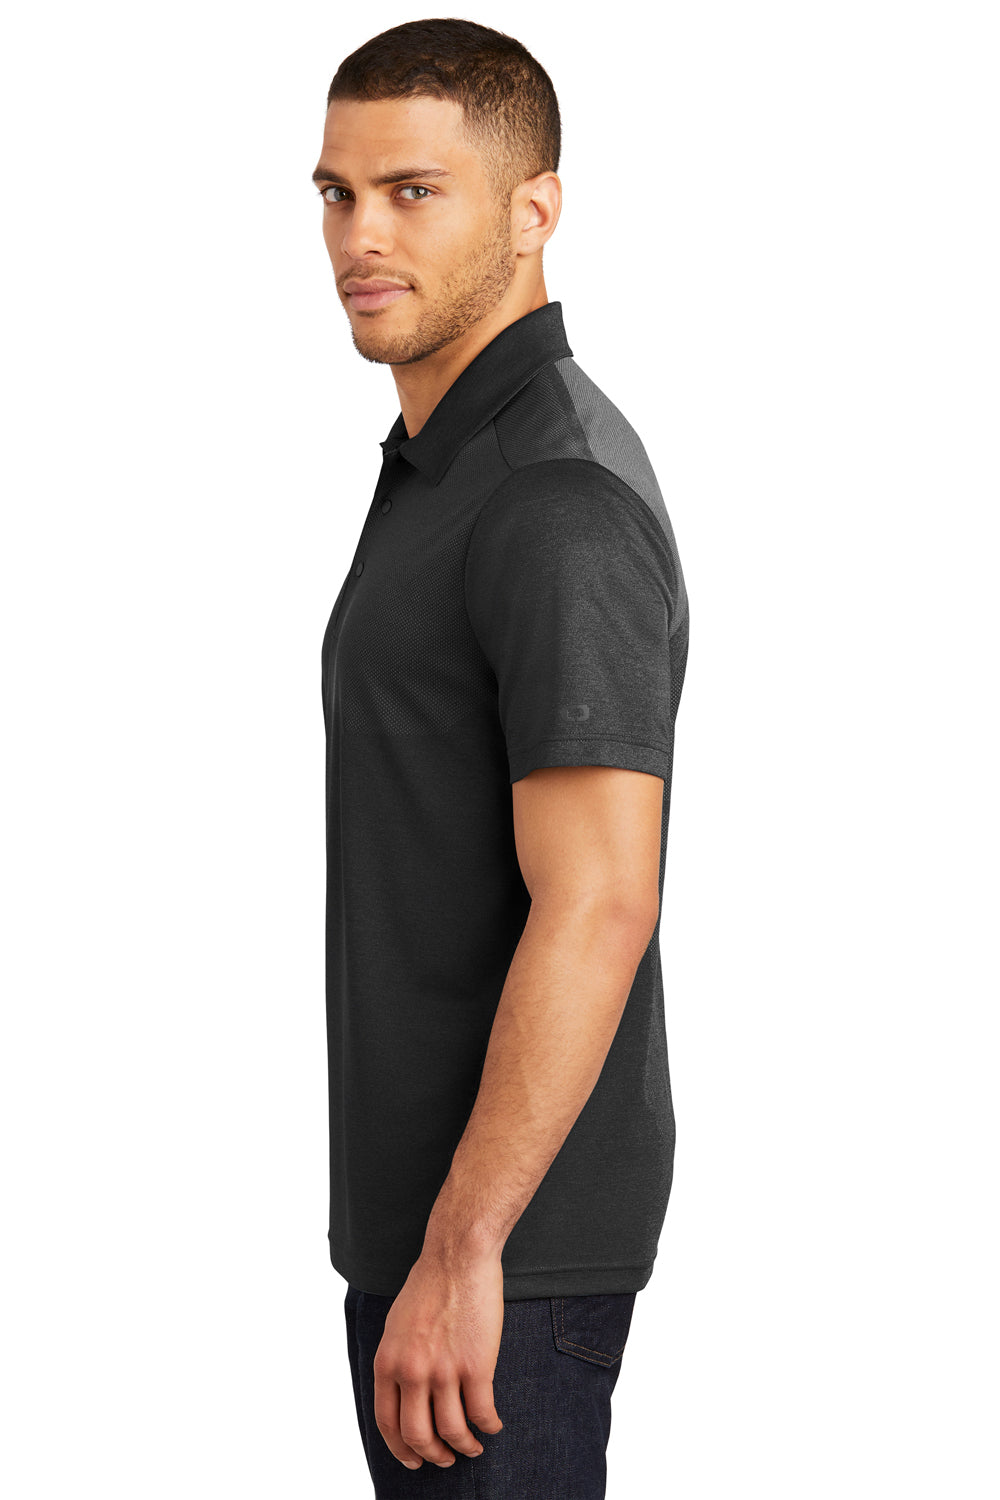 Ogio OG137 Mens Surge Moisture Wicking Short Sleeve Polo Shirt Black Side